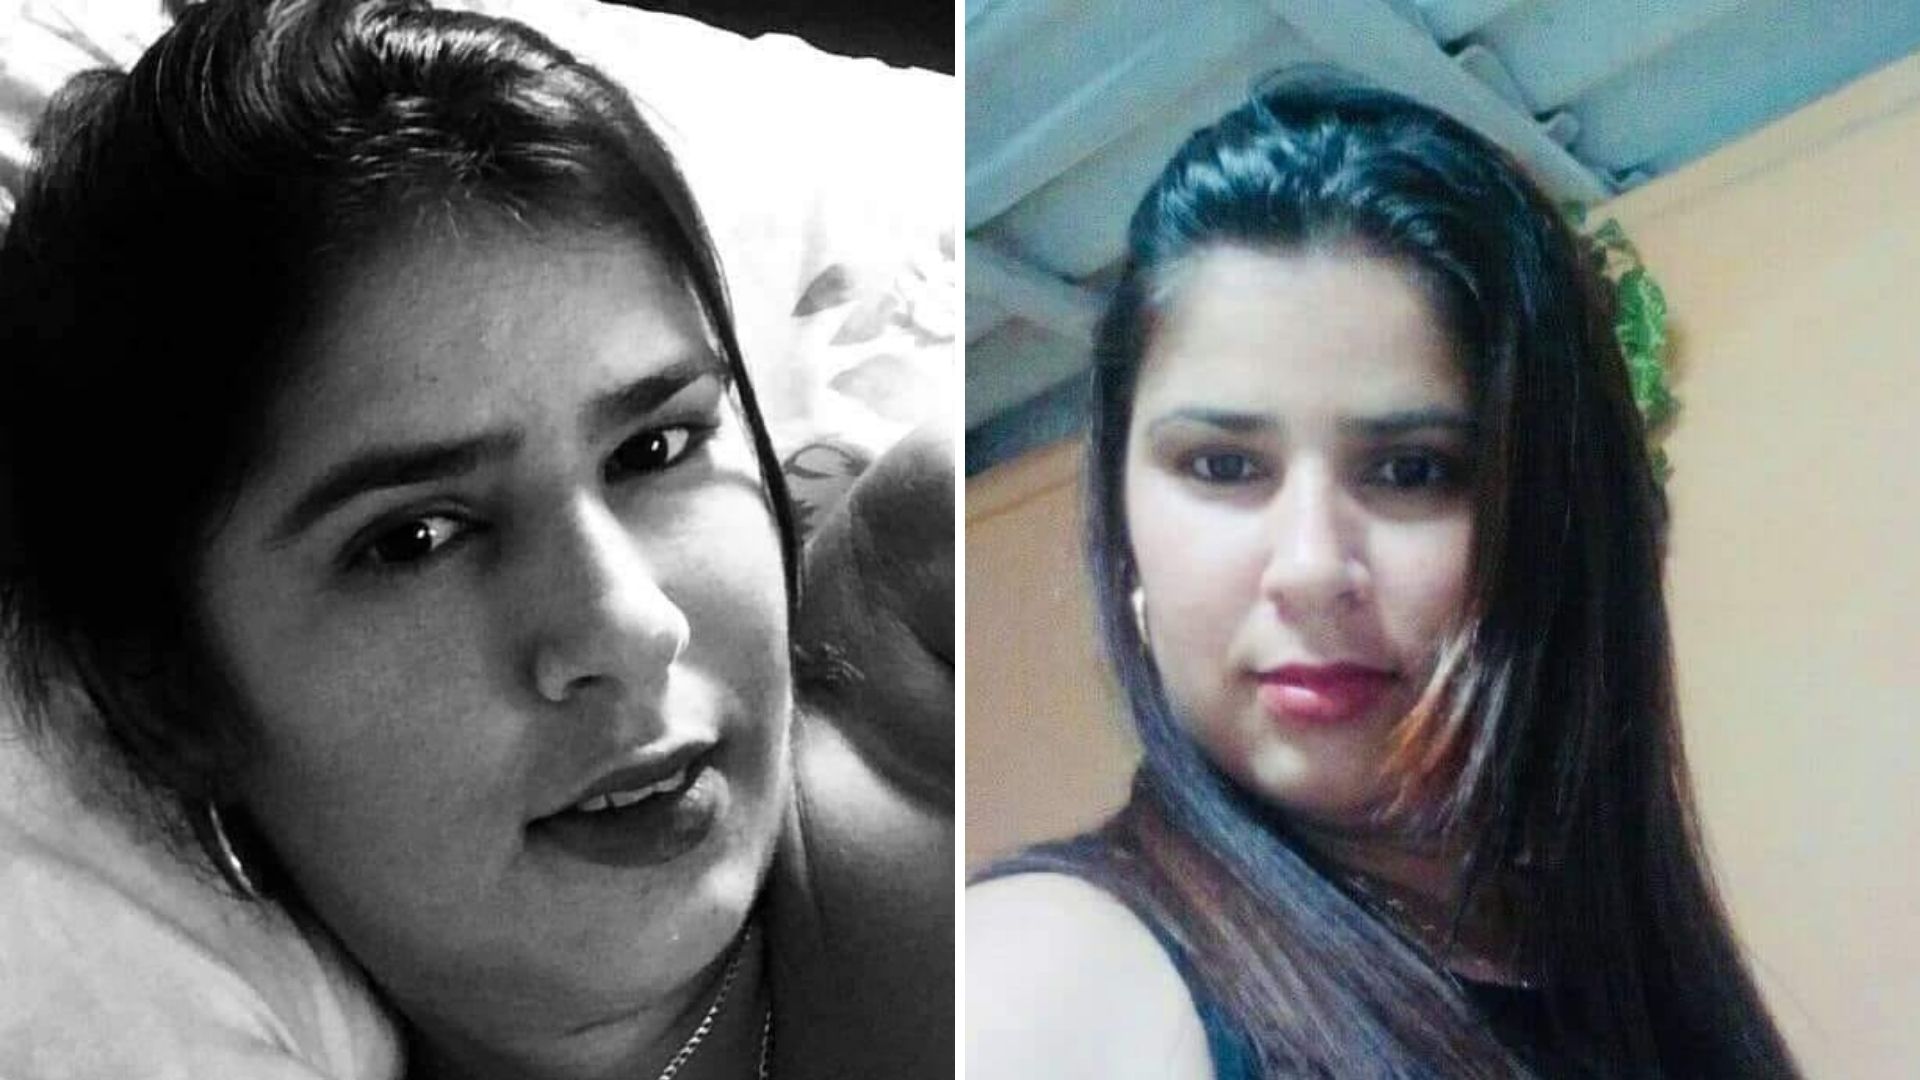 La cubana Yeniset Rojas, residente de Ranchuelo, provincia Villa Clara, se encuentra desaparecida desde hace 20 días